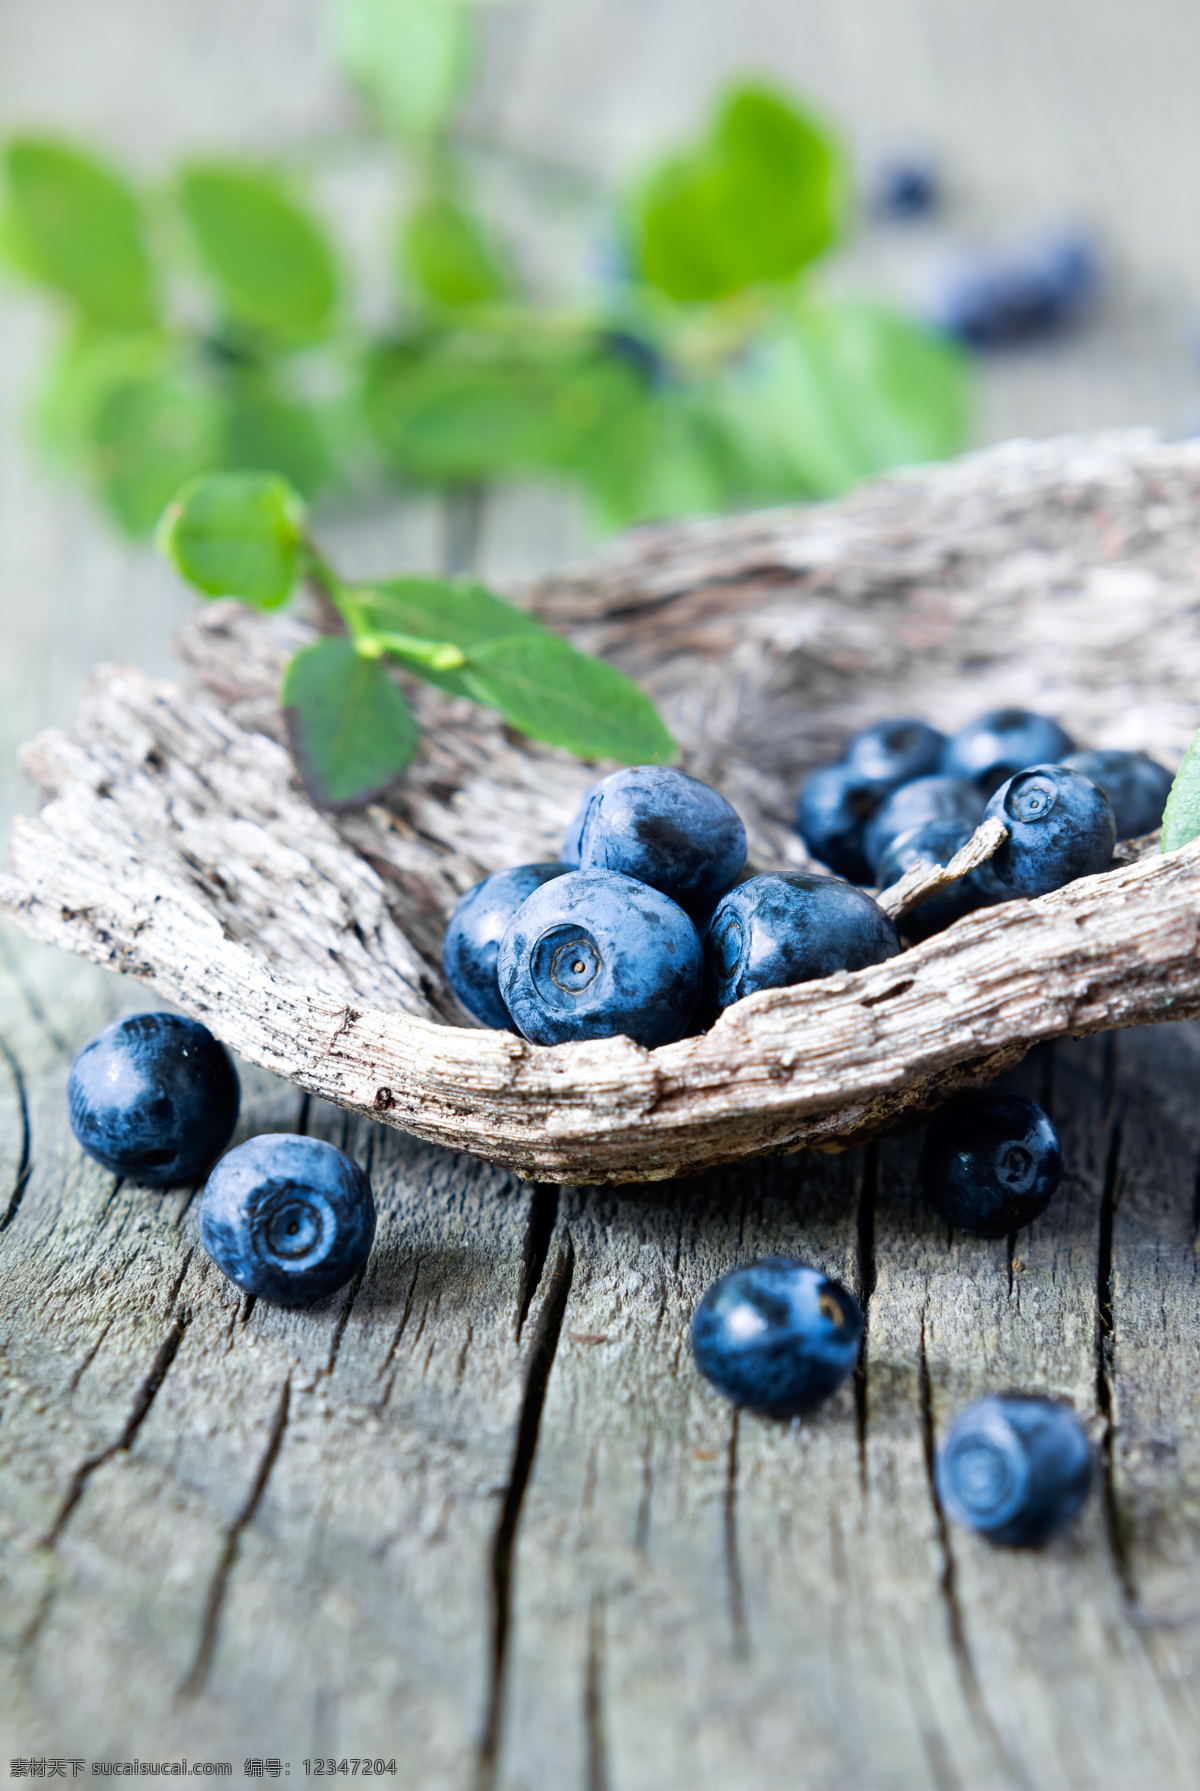 新鲜蓝莓果实 蓝莓 新鲜蓝莓 新鲜水果 水果摄影 果实 浆果 水果蔬菜 餐饮美食 灰色